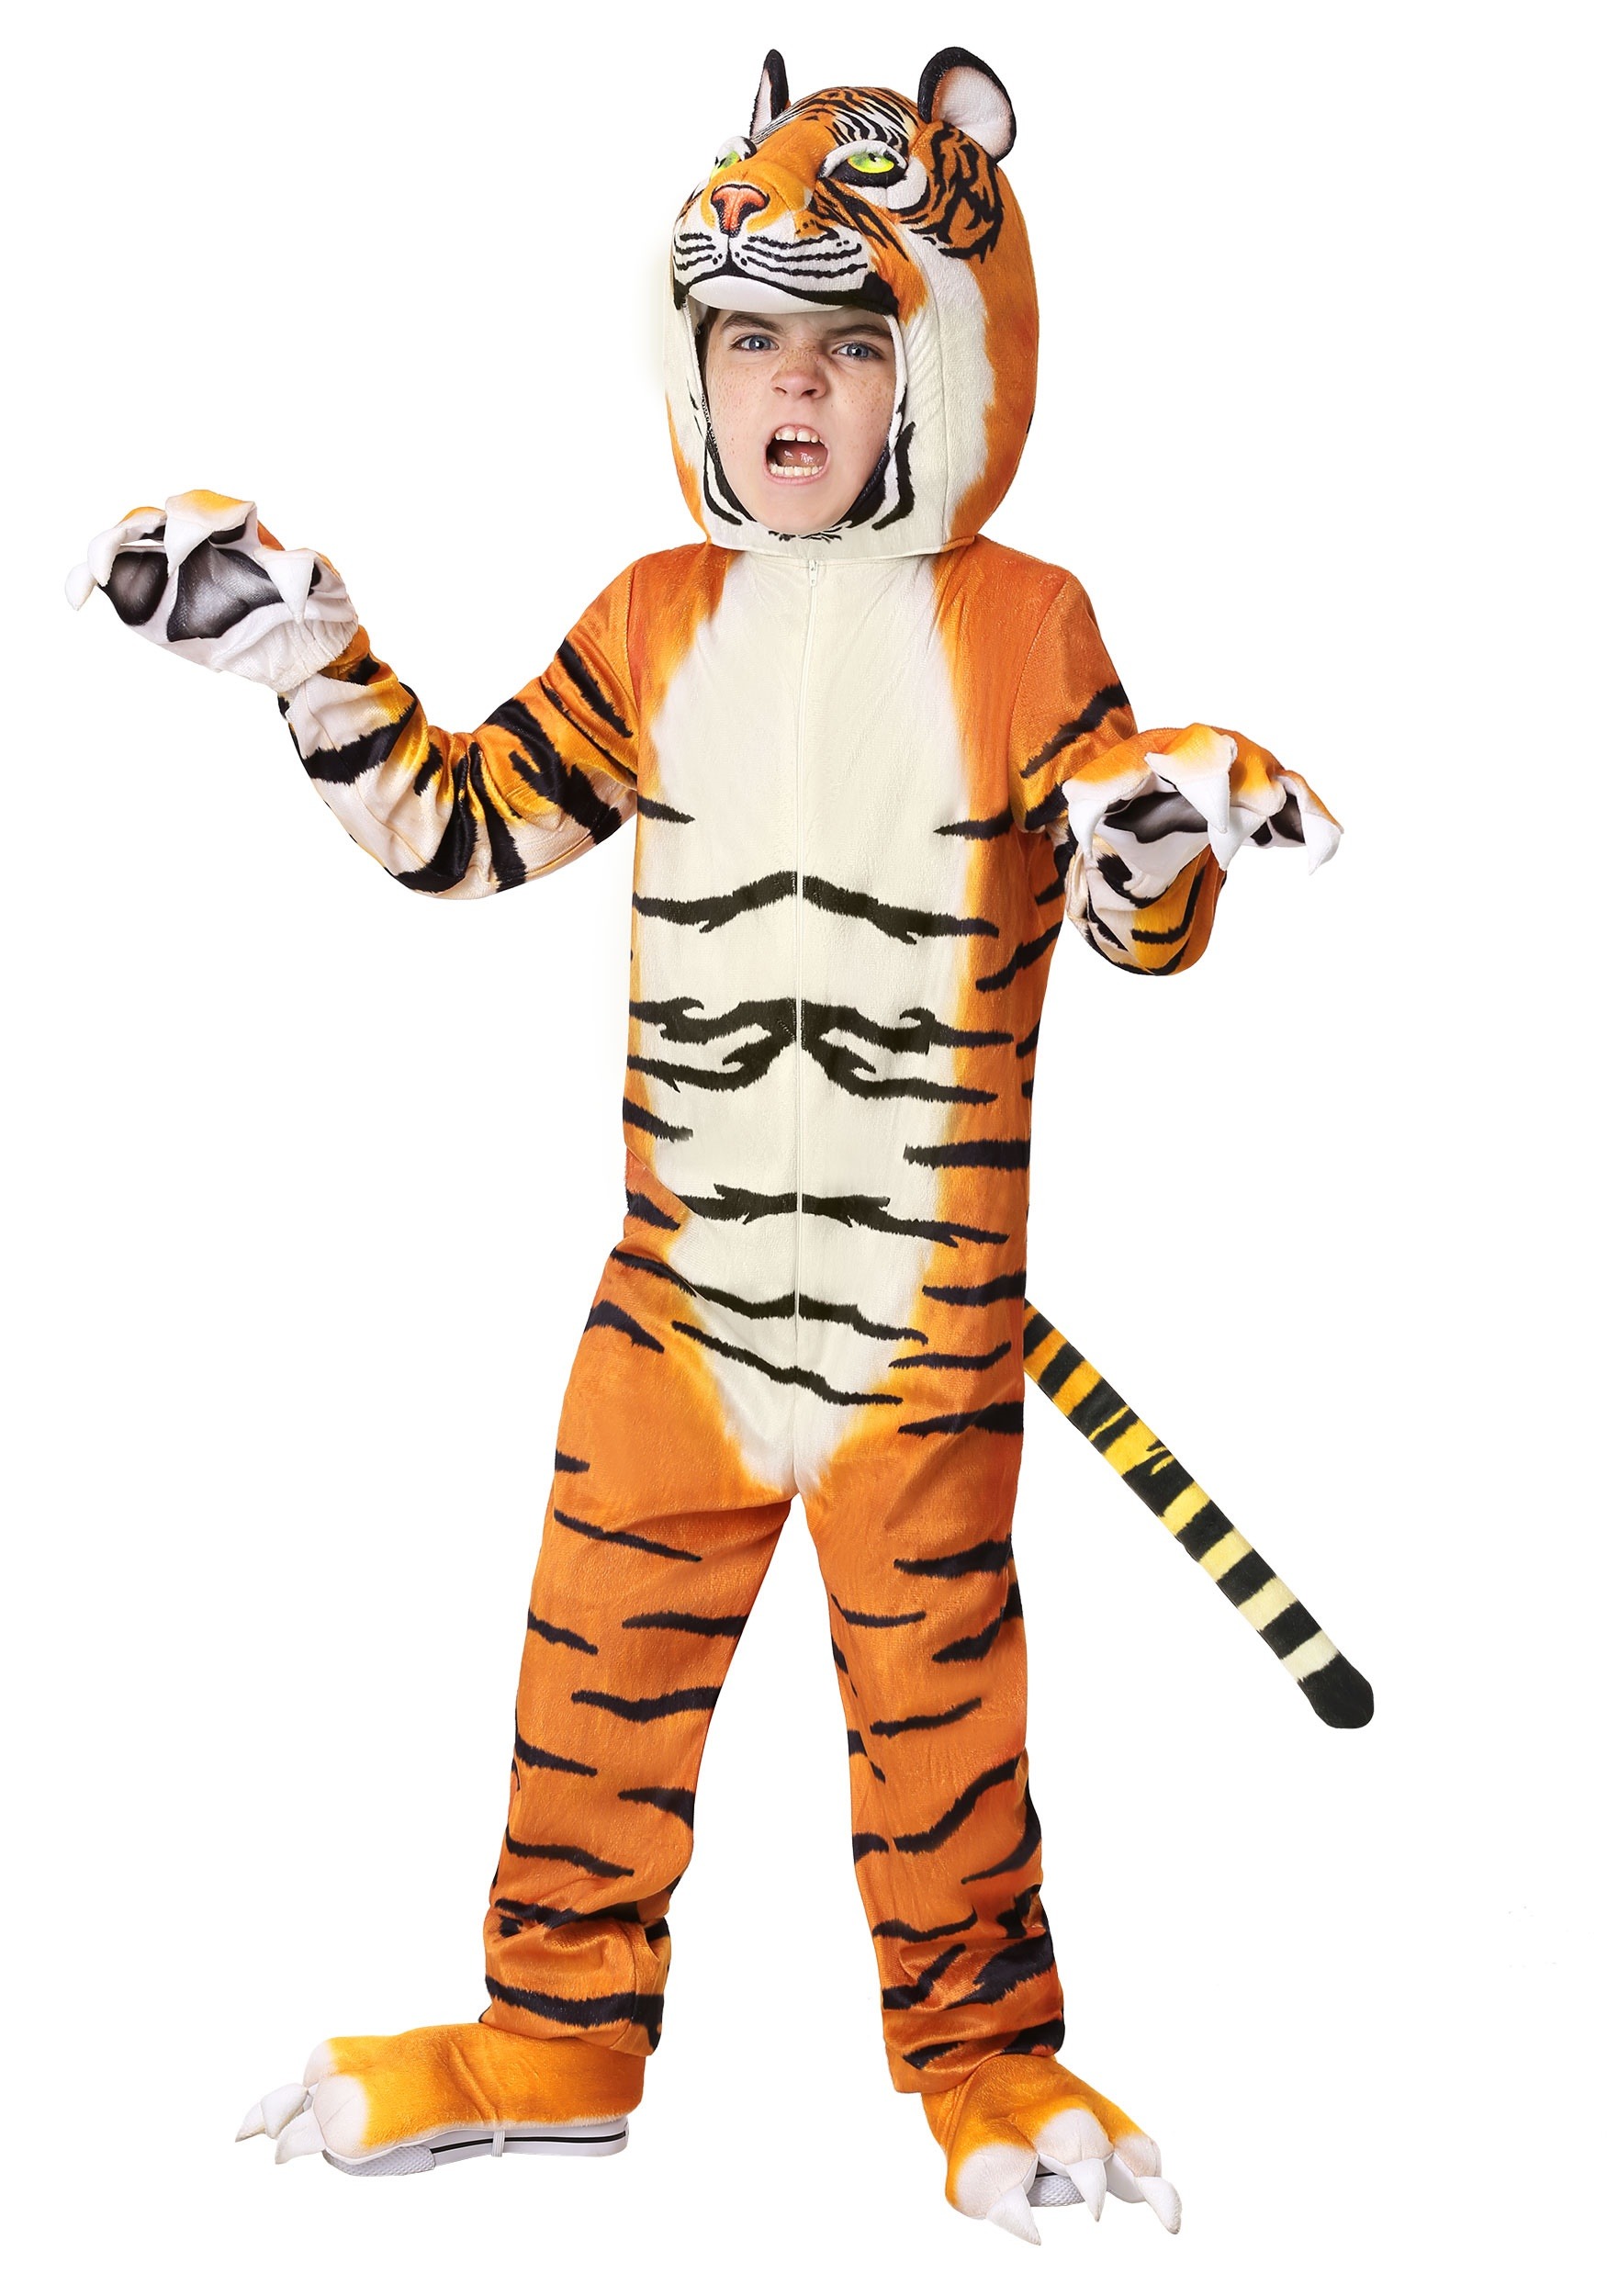 Realistic Tiger Child’s Costume